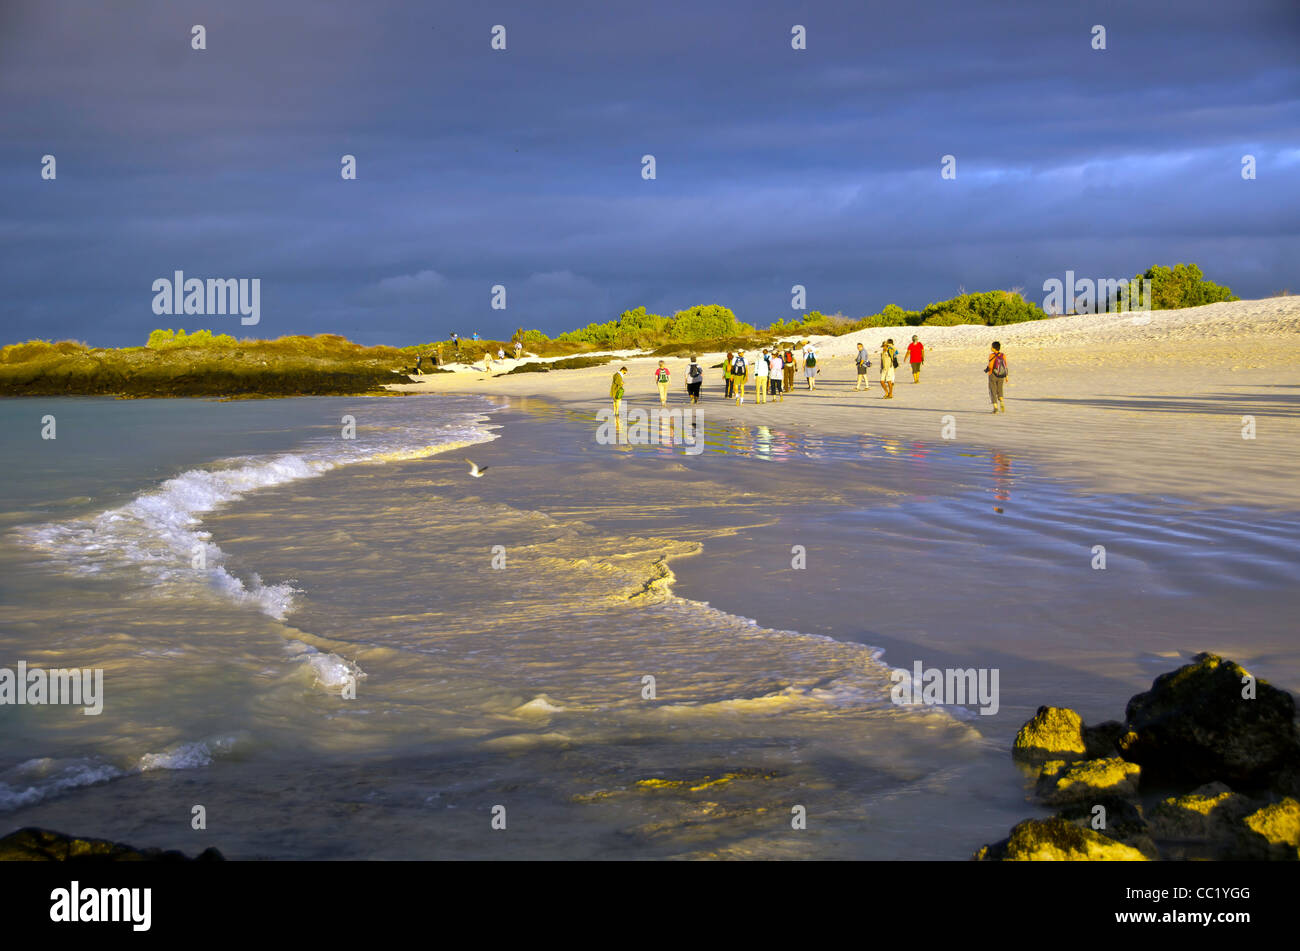 Les touristes la marche sur la plage Las Bachas, Santa Cruz Island, îles Galapagos, Equateur Banque D'Images